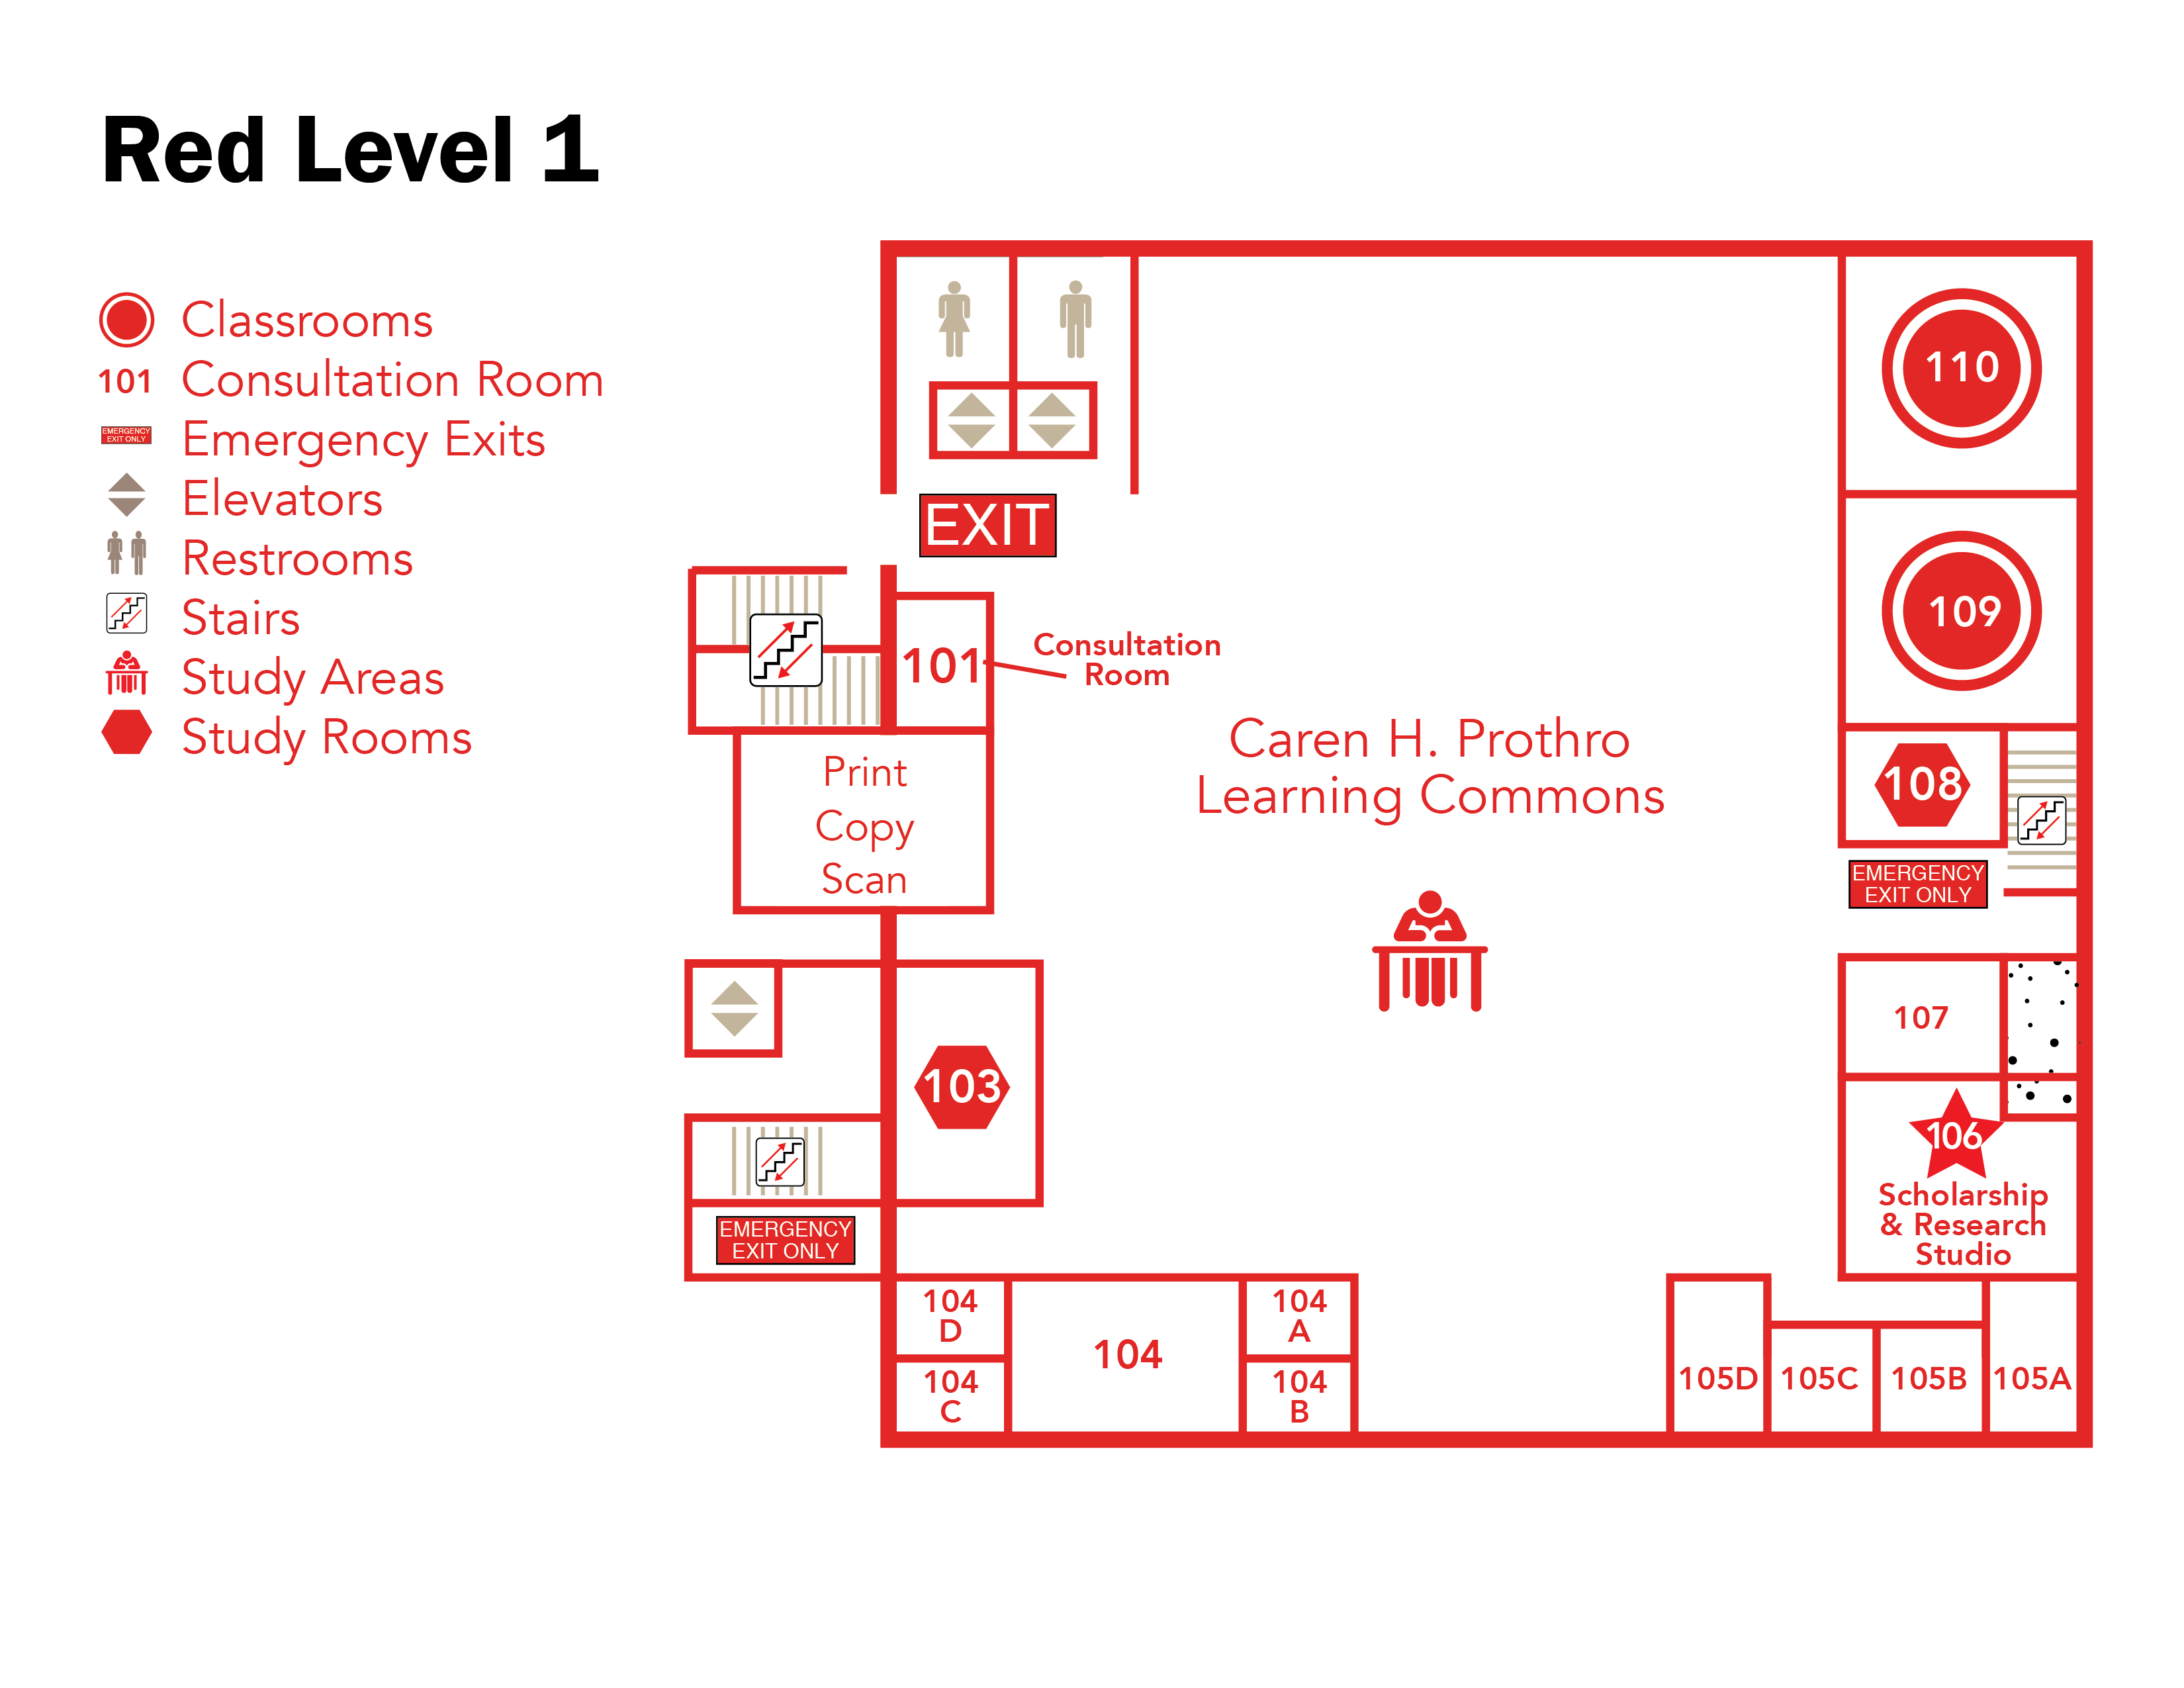 Fondren Library Red Level 1 map